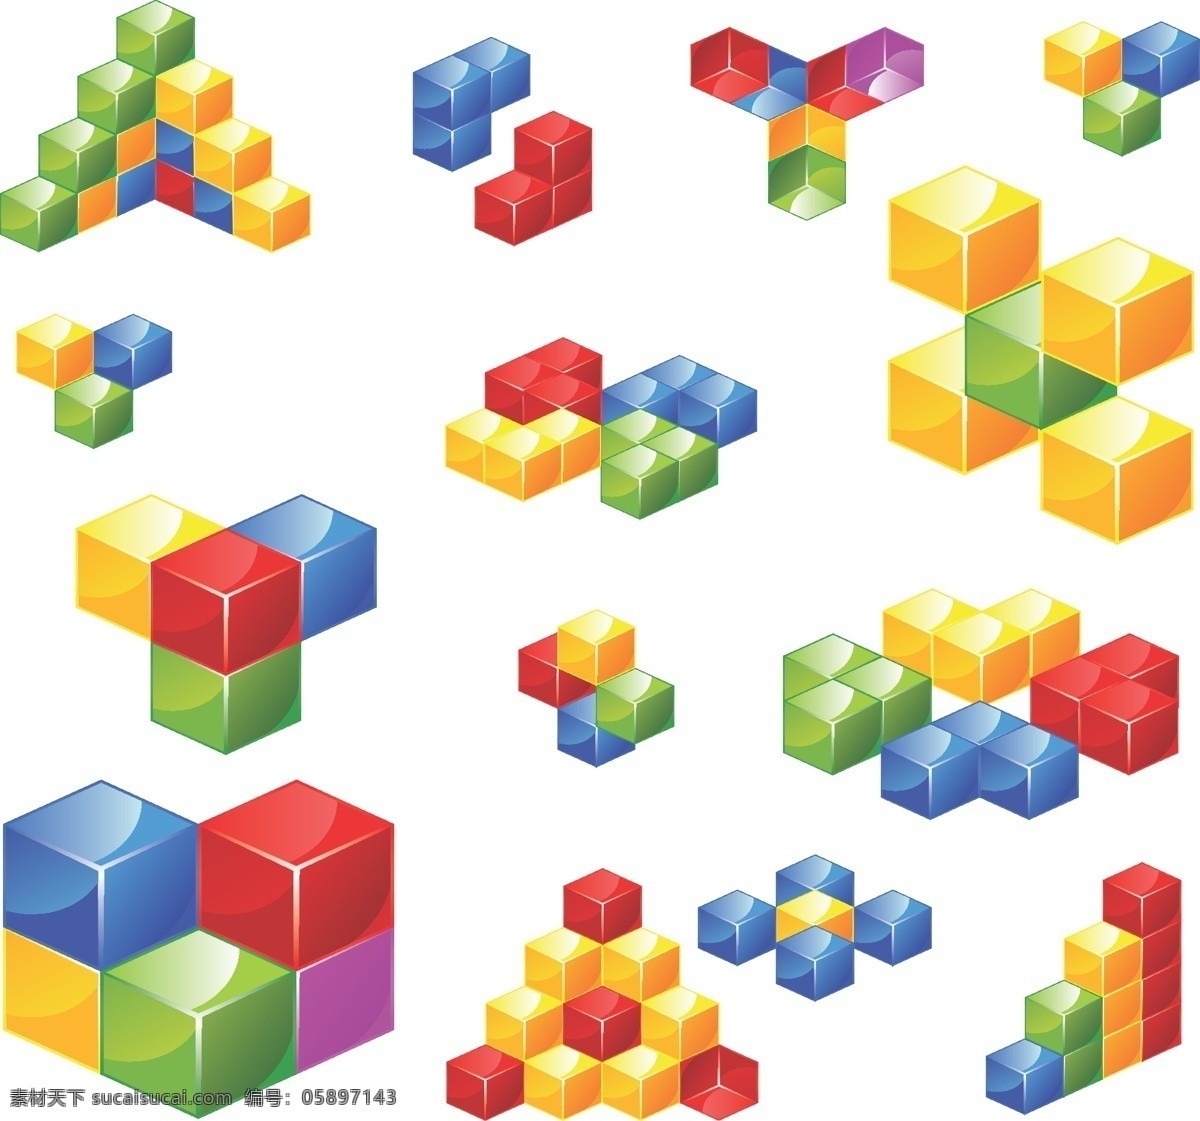 彩色 3d 方块 3d效果图 ai格式 俄罗斯方块 模板 设计稿 素材元素 图形 源文件 矢量图